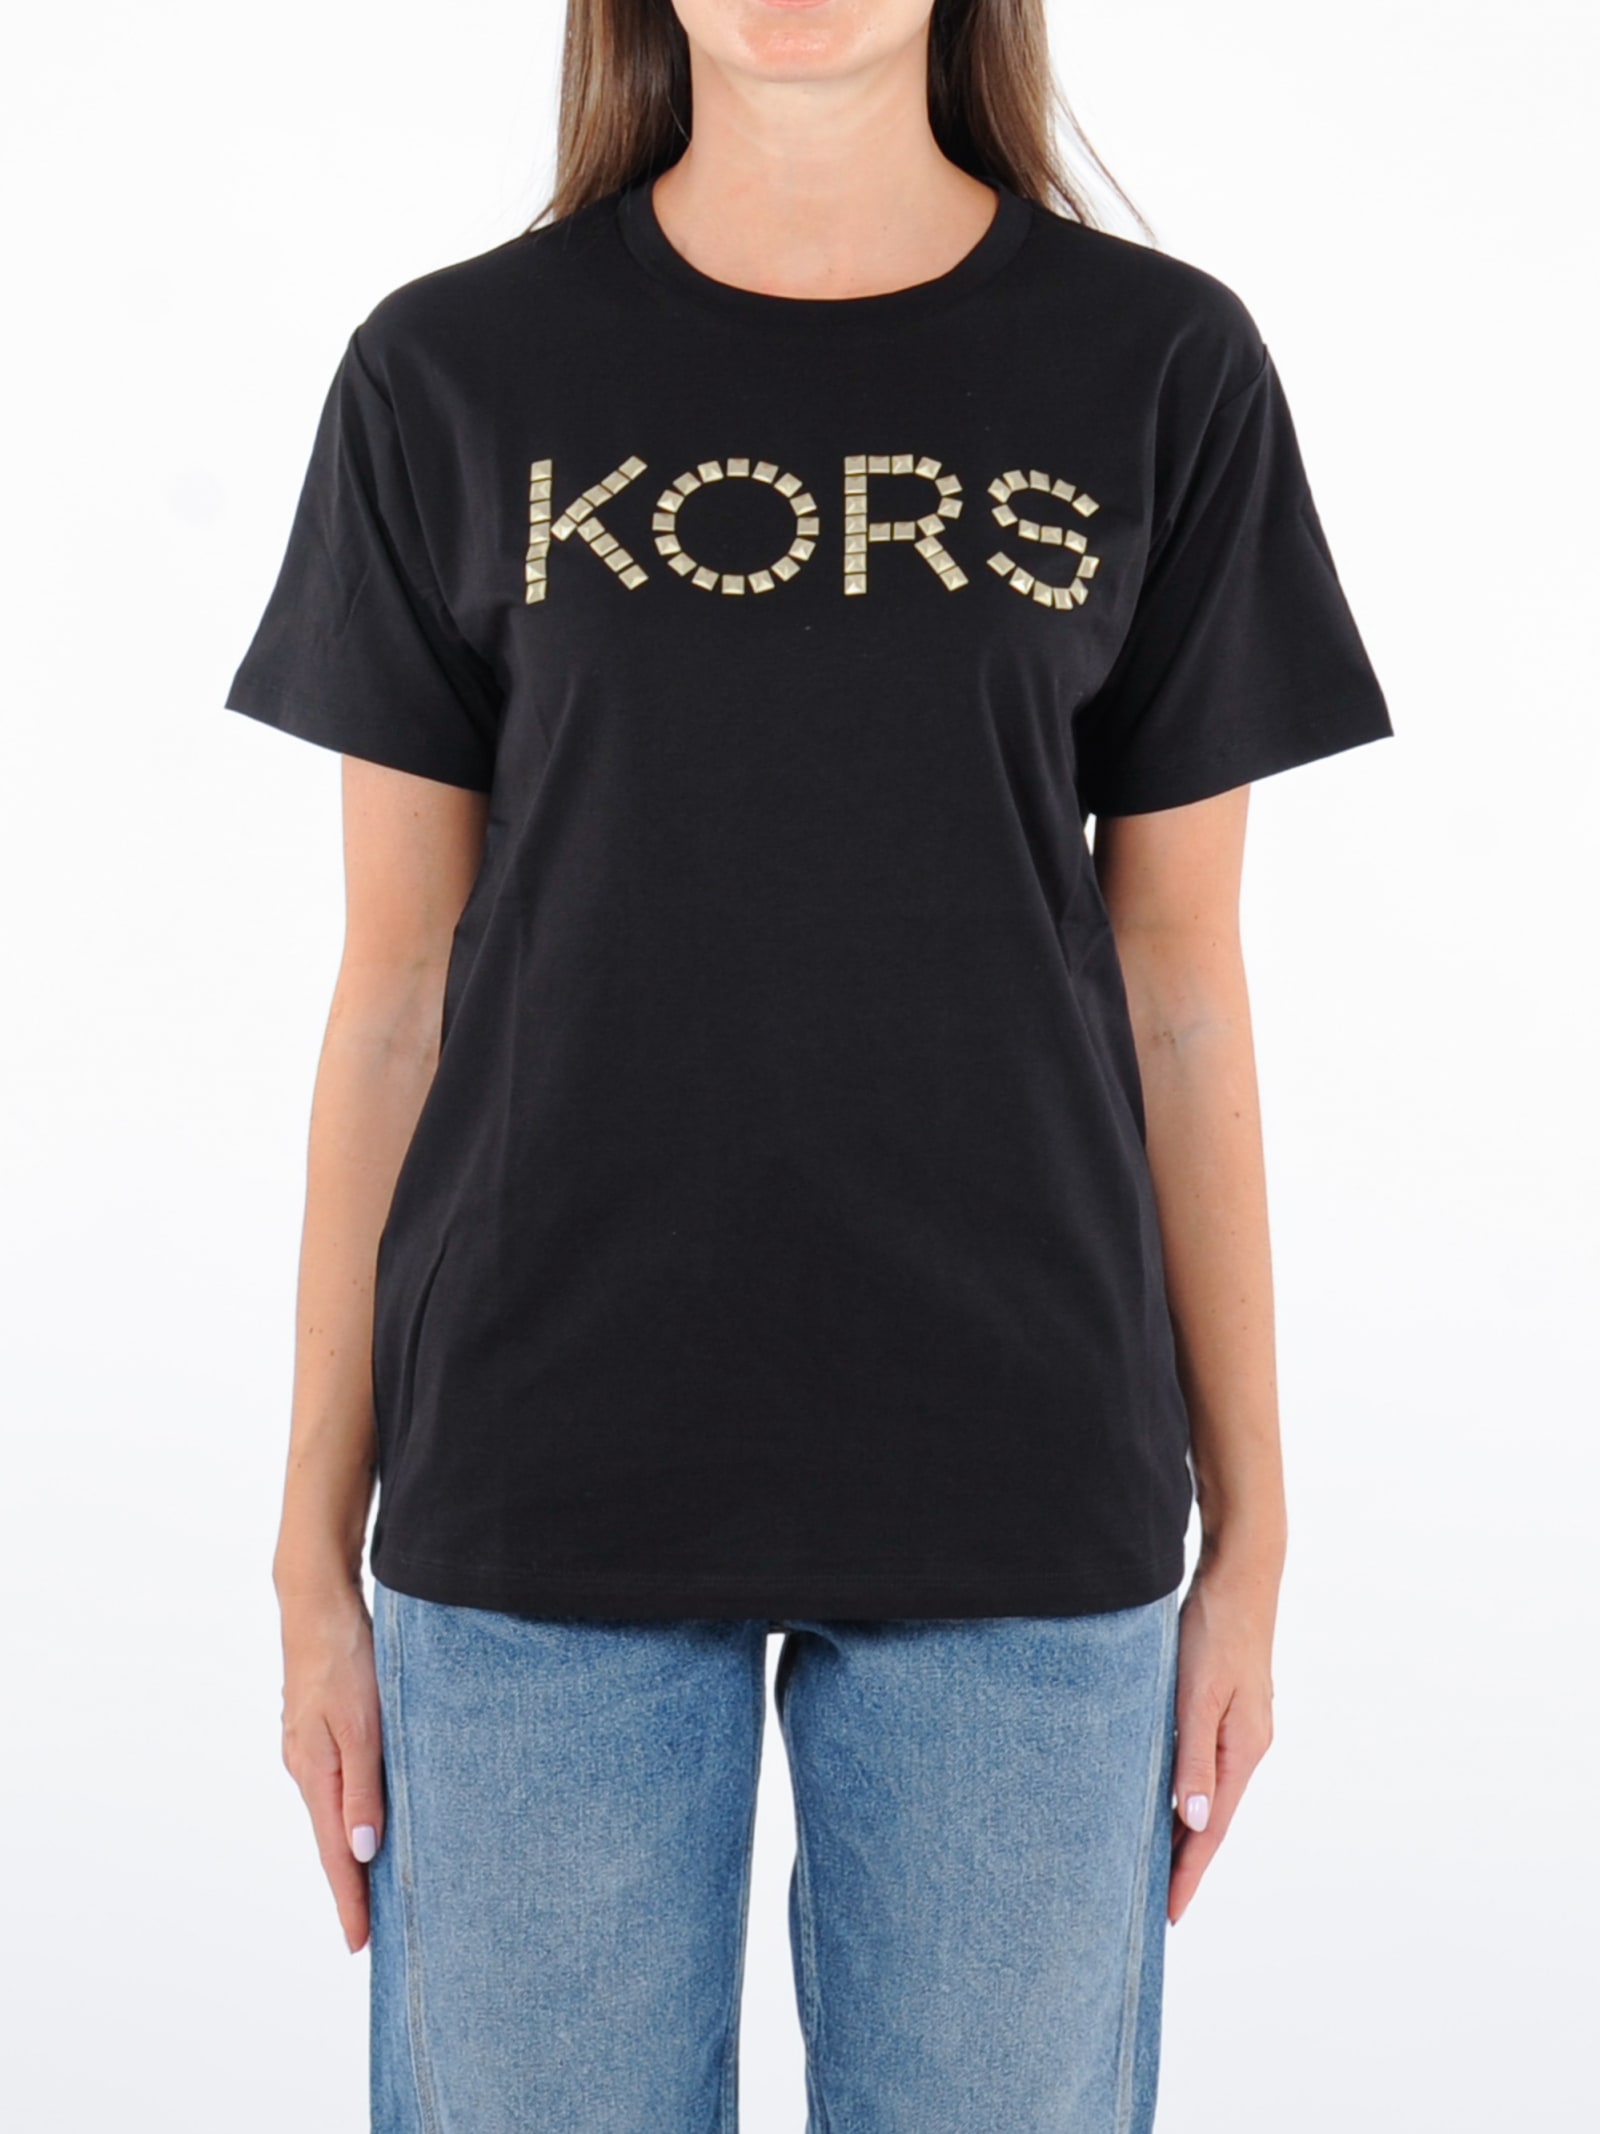 Michael Kors Studded Kors Tee T-shirt